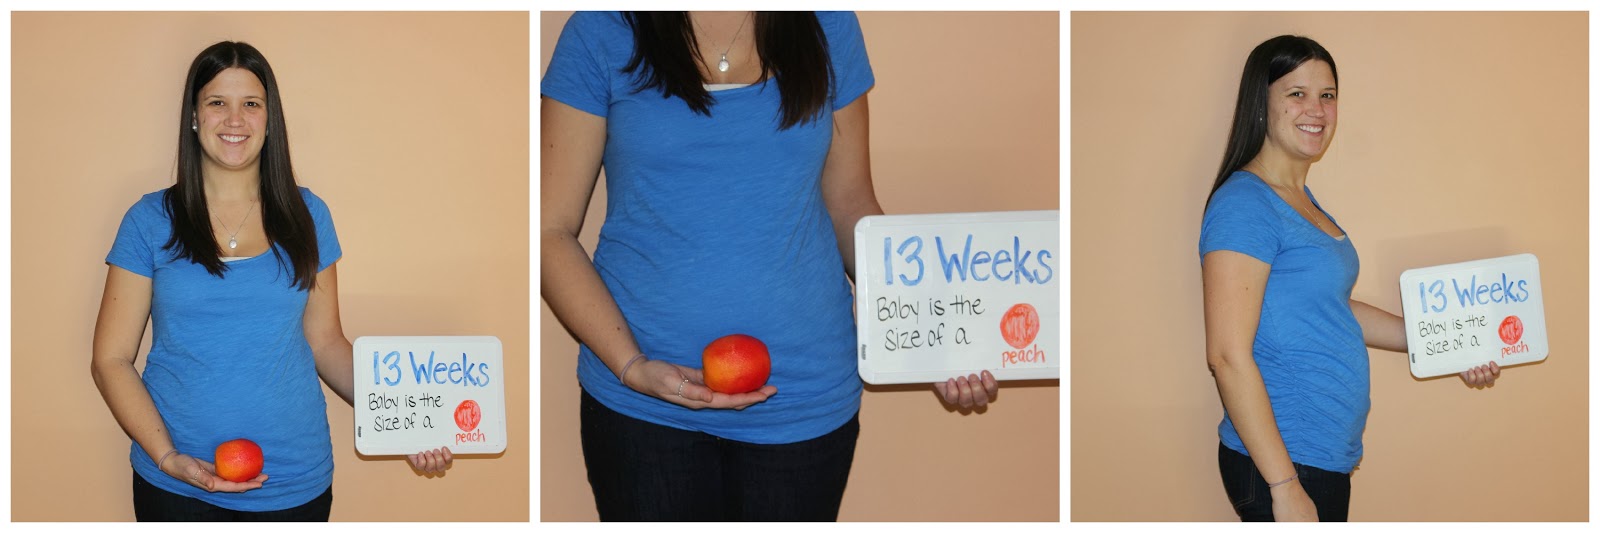 14 неделя 3 дня. Живот на 13 акушерской неделе. Размер ребенка в 13 недель. Фото беременных 13 недель.